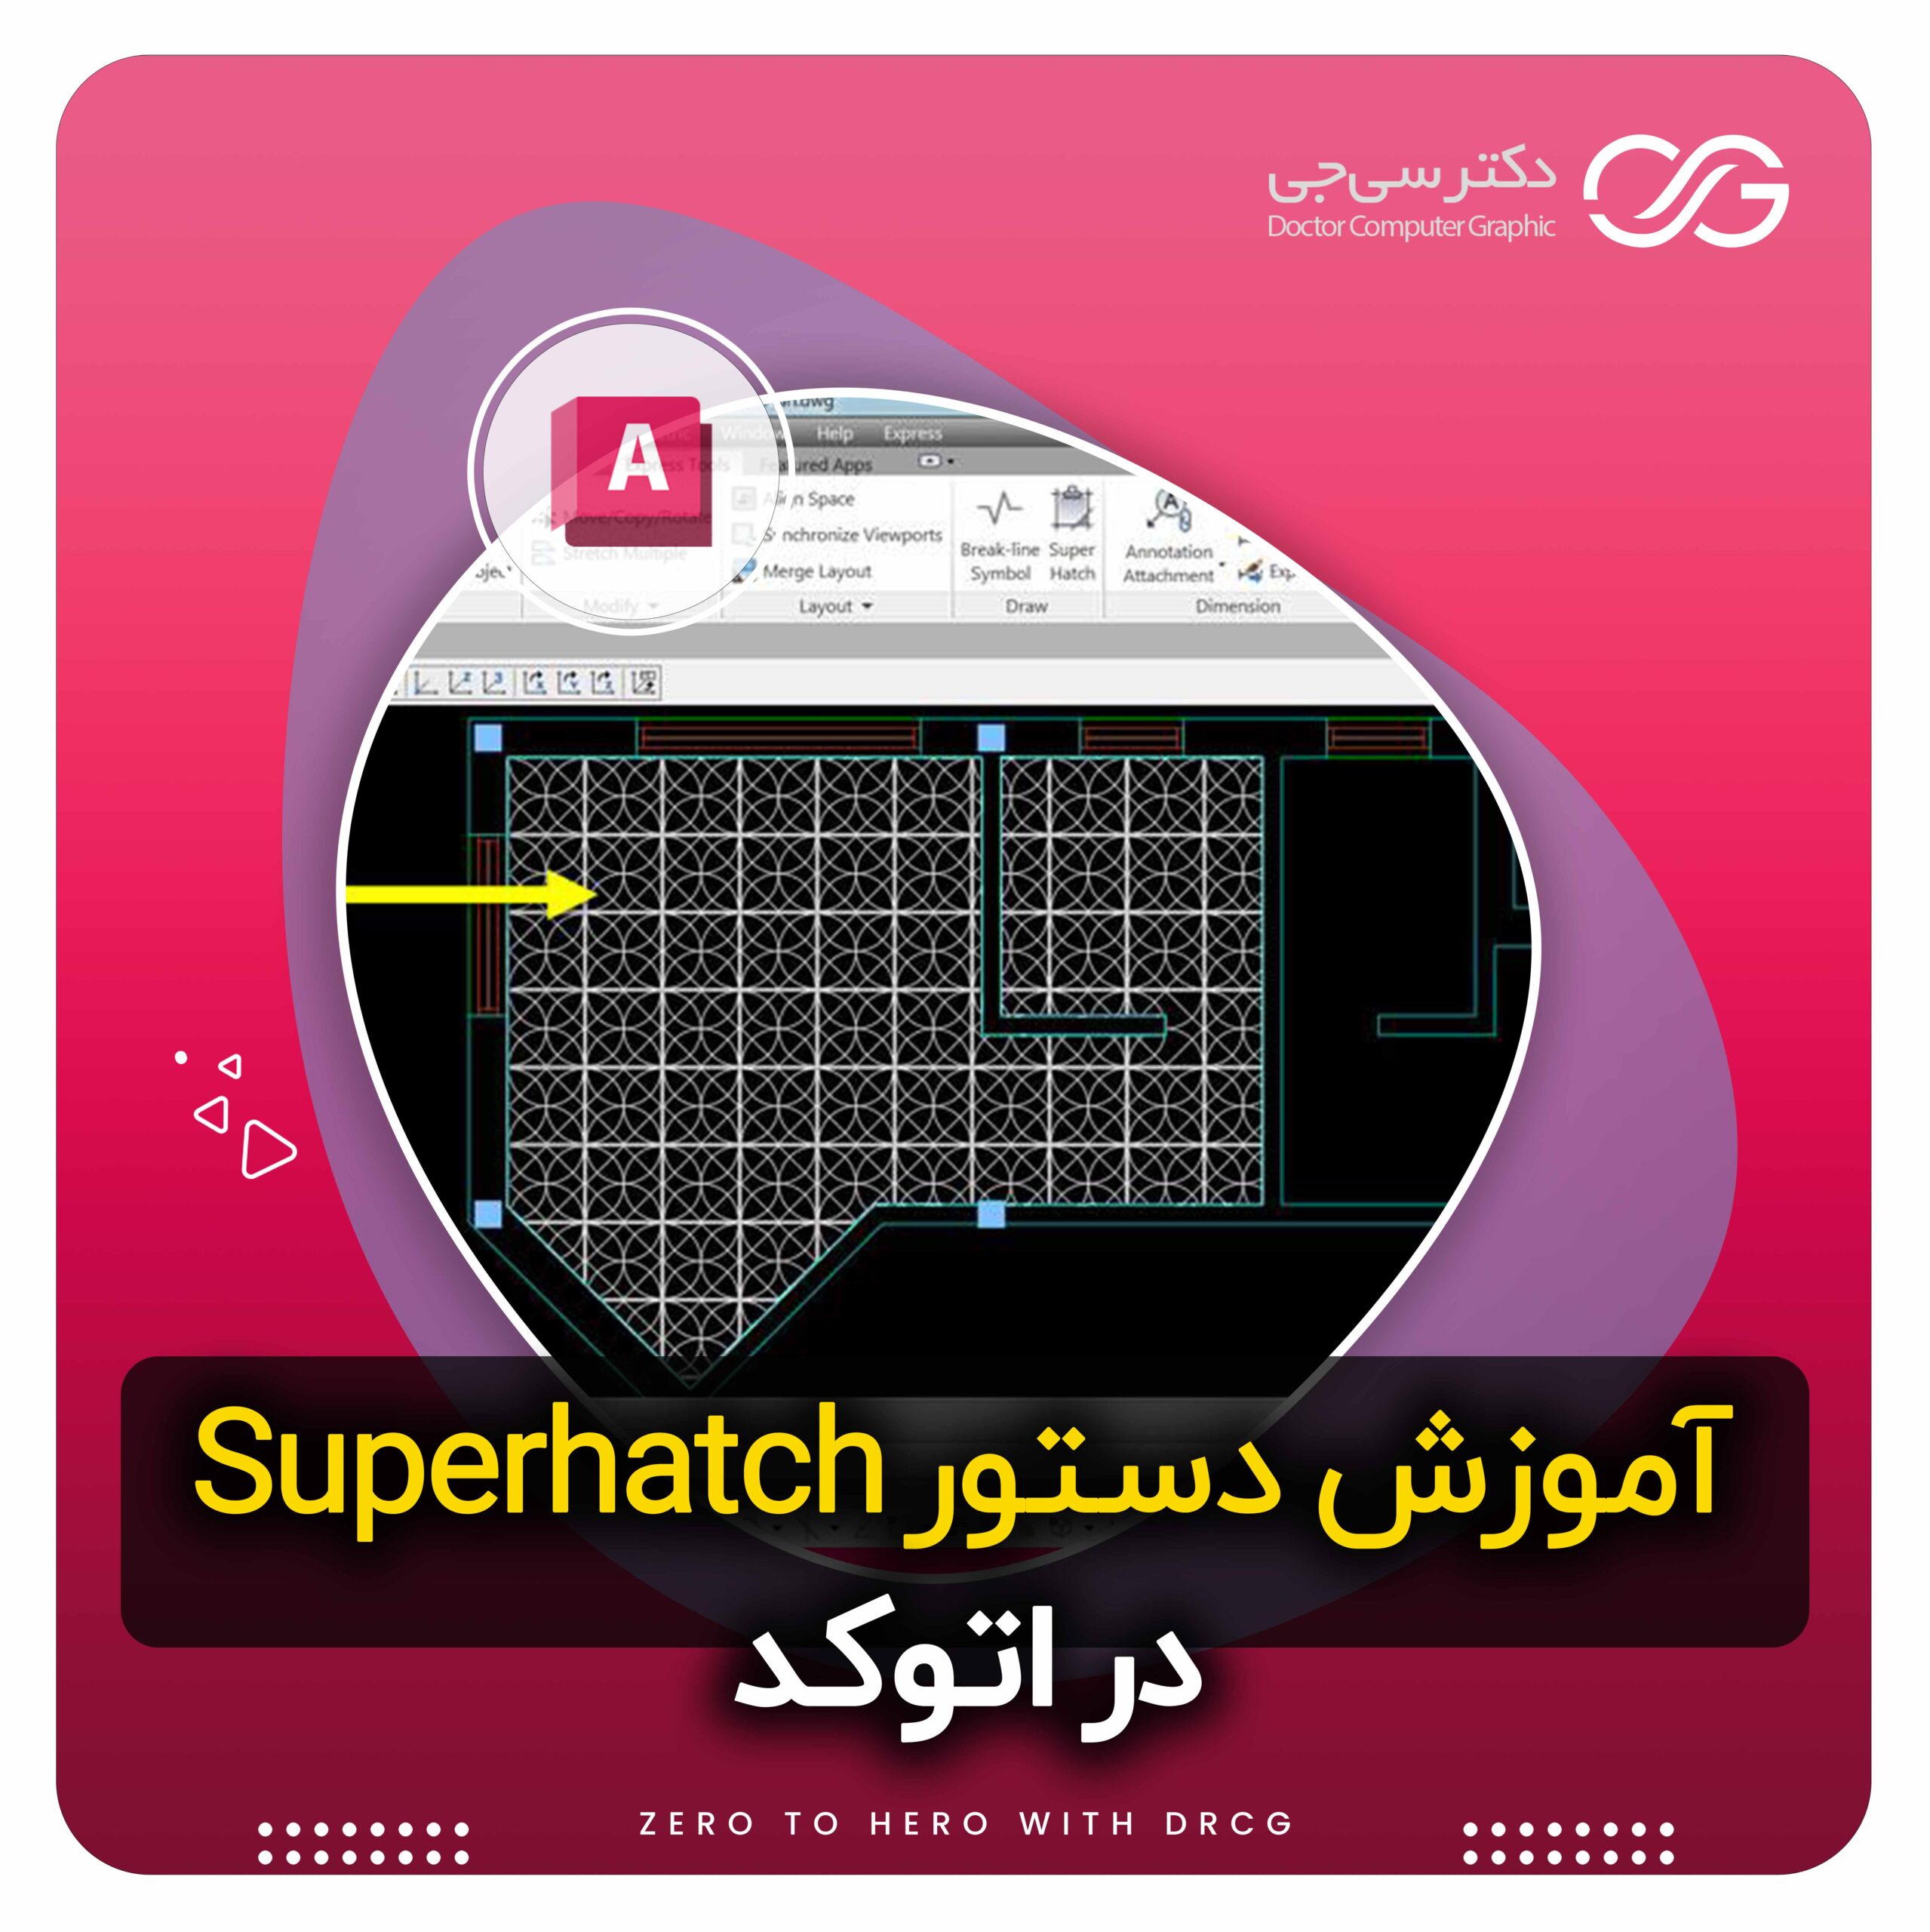 ساخت هاشور دلخواه در اتوکد با دستور Superhatch